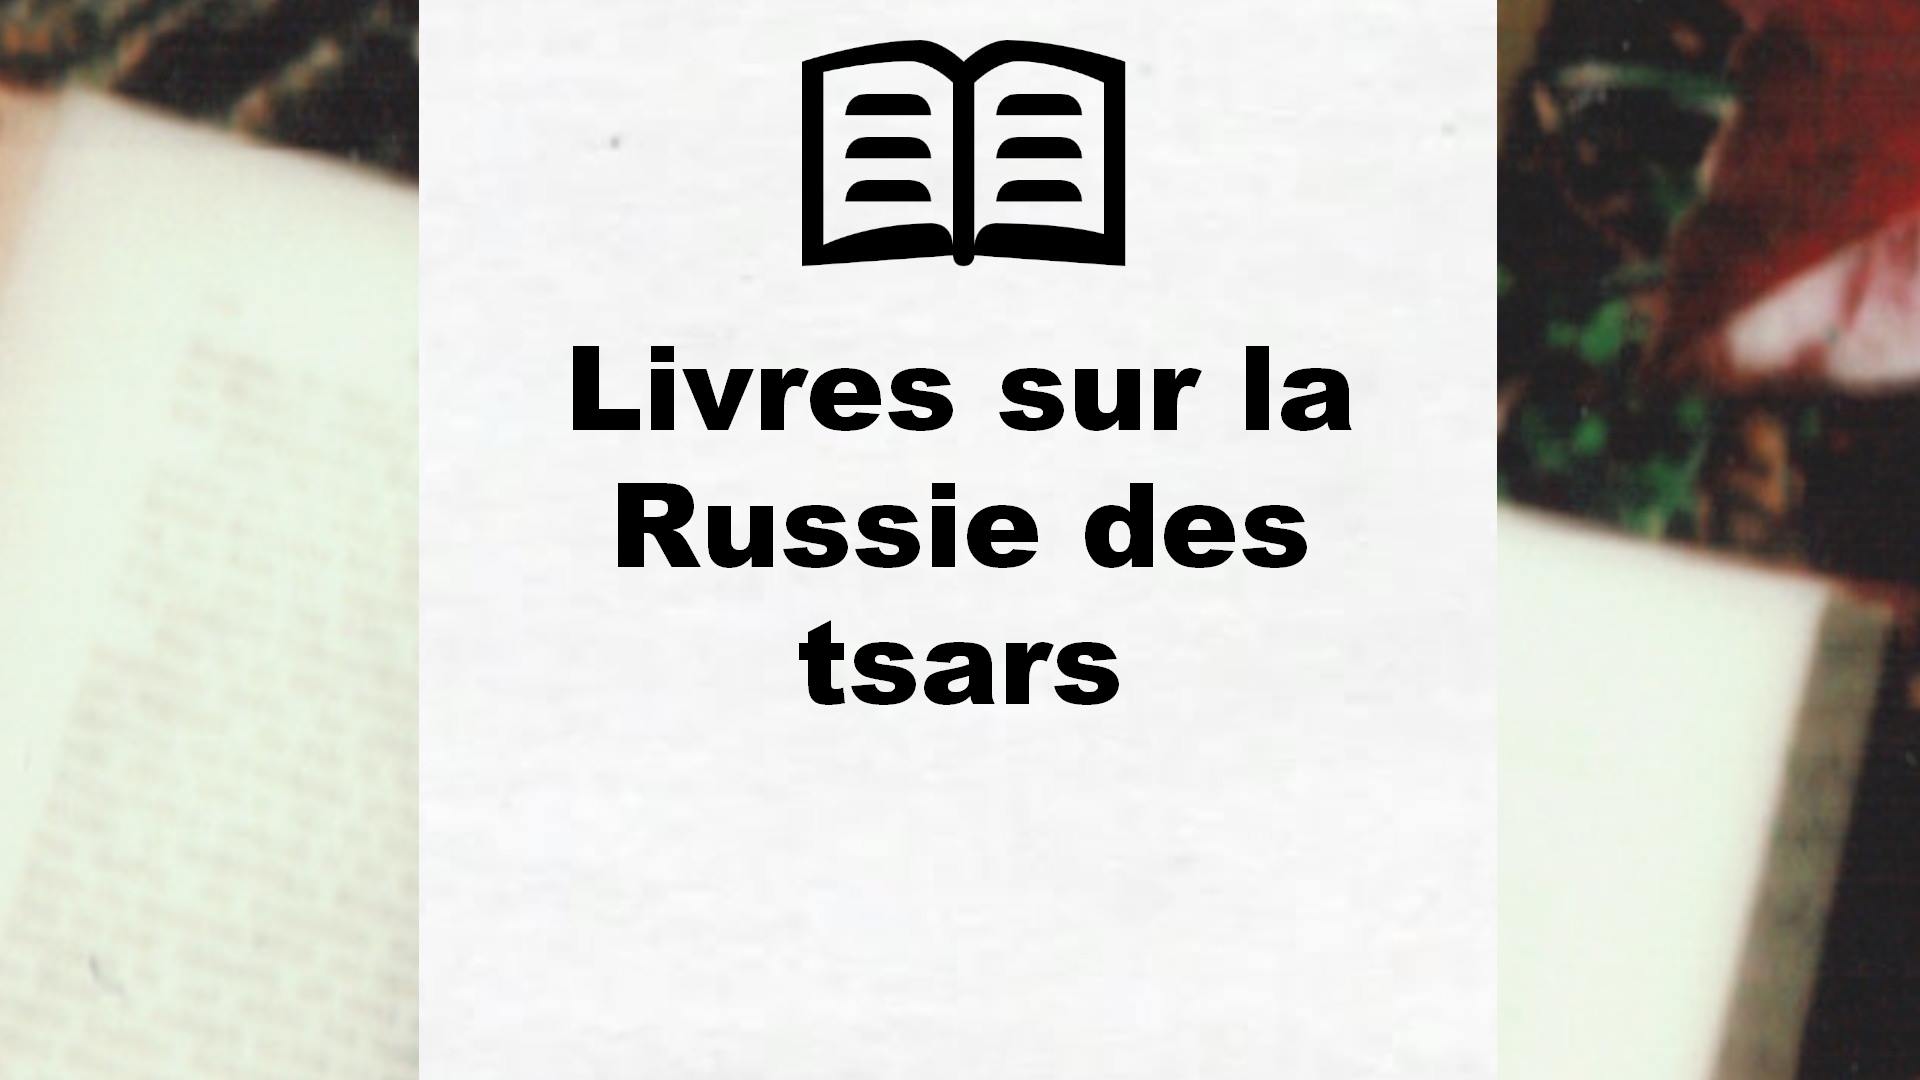 Livres sur la Russie des tsars